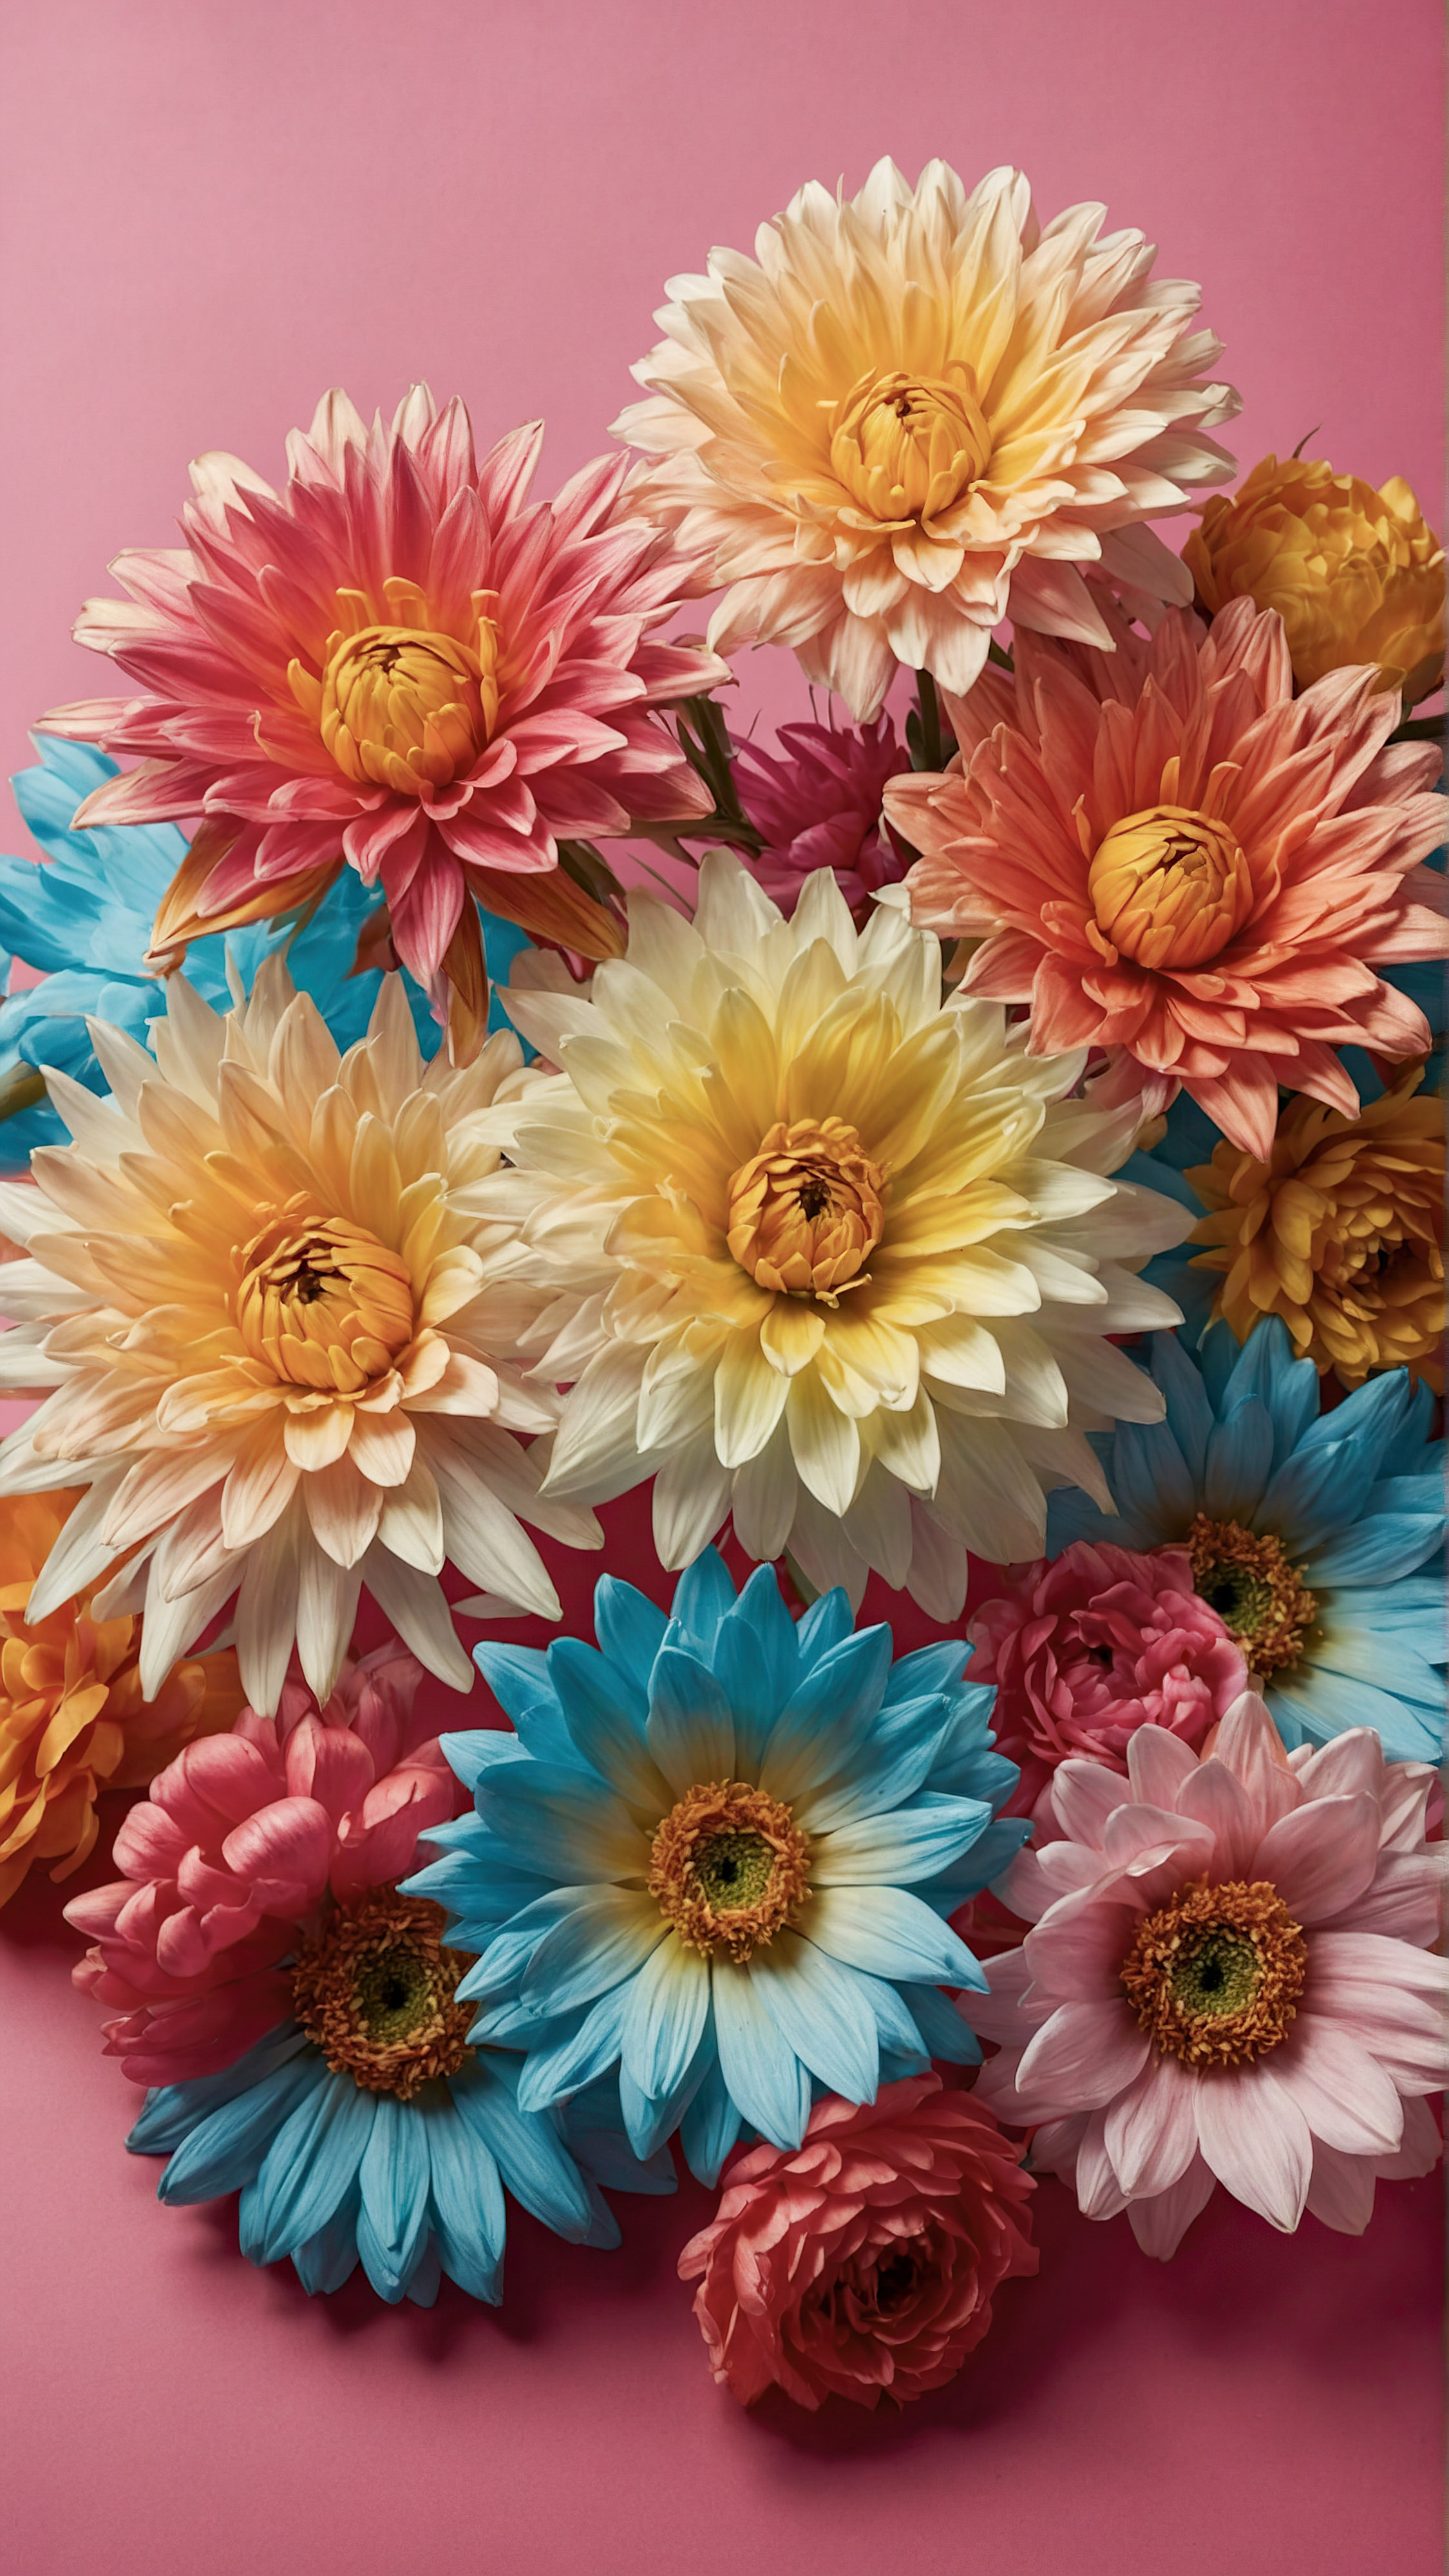 Profitez de la beauté et du style de notre beau fond d'écran iPhone, présentant une collection de fleurs artificielles vibrantes avec des pétales détaillés et des centres, sur un fond rose contrastant.